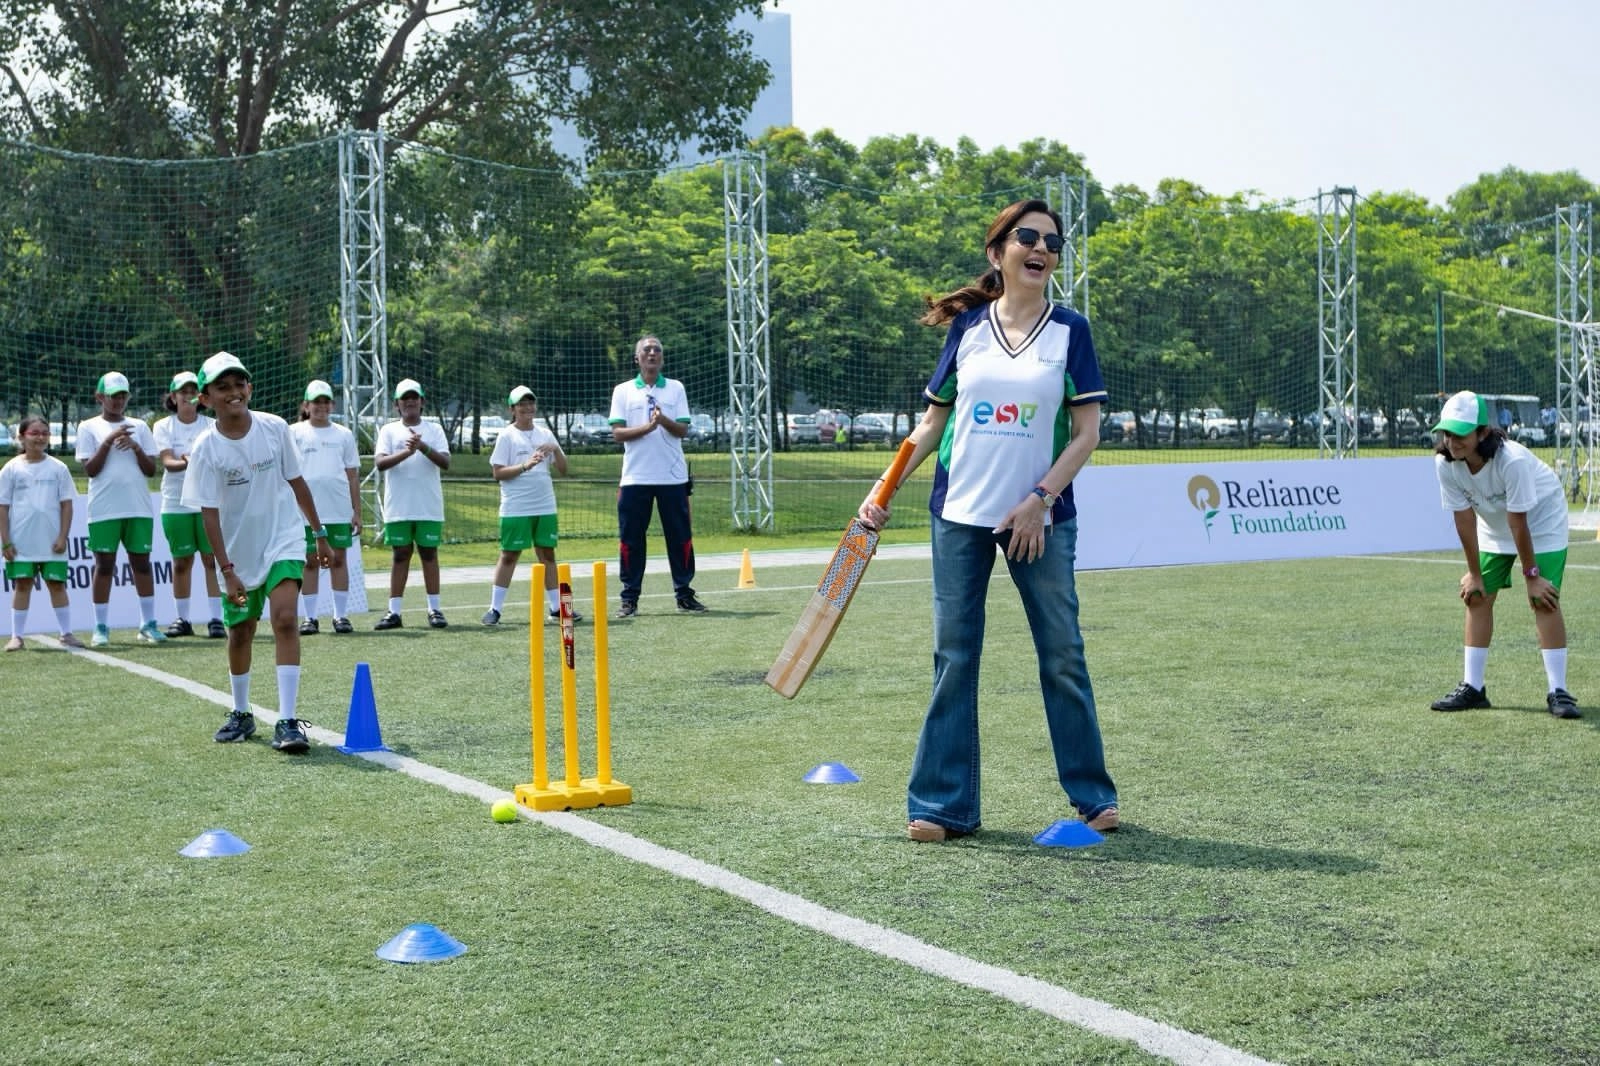 क्रिकेट हुआ 2028 के ओलंपिक में शामिल, नीता अंबानी ने क्रिकेट लवर्स को दी बधाई - Nita Ambani congratulated cricket lovers on cricket being included in 2028 Olympics